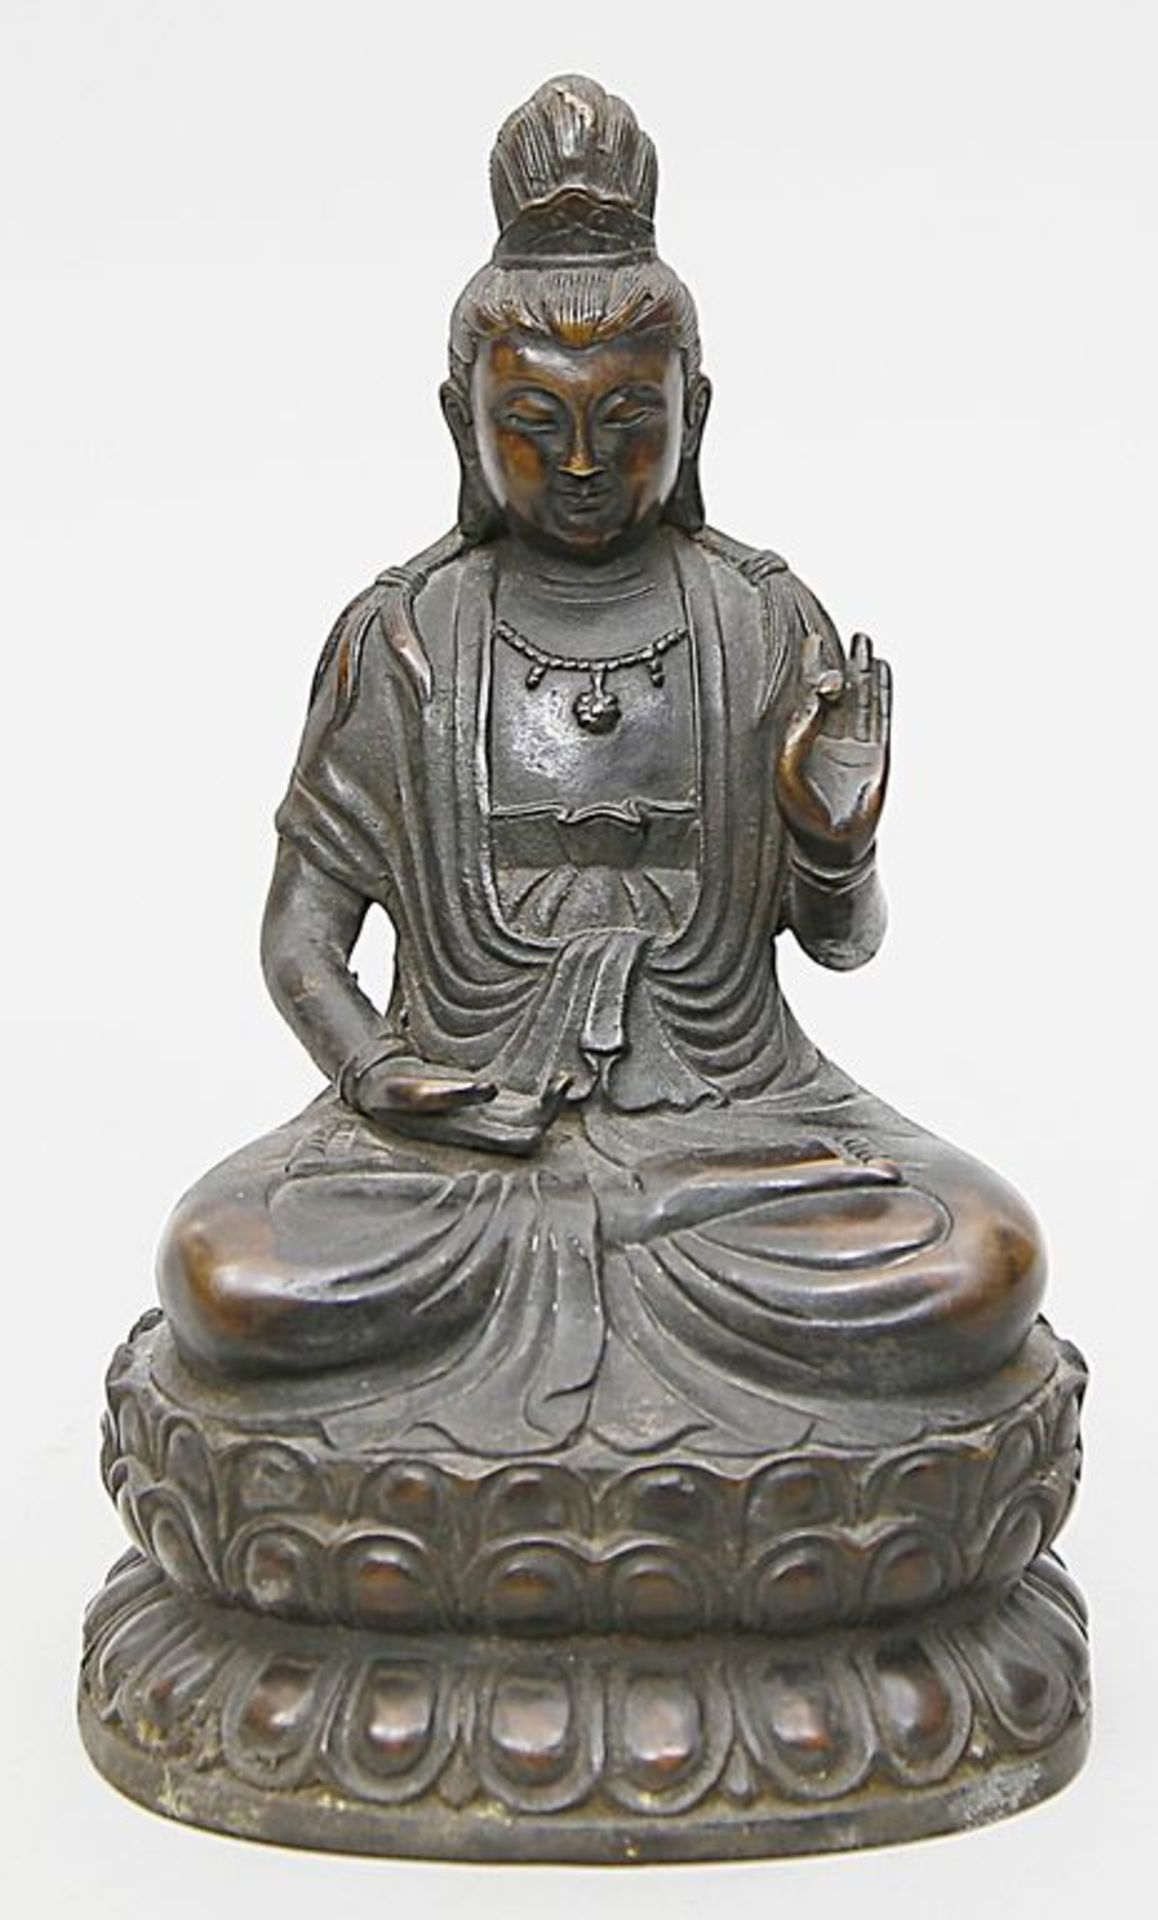 Skulptur "Bodhisattva Guanyin", Ming-Zeit. Bronze. Schwarz-braune Patina. Gottheit auf doppeltem